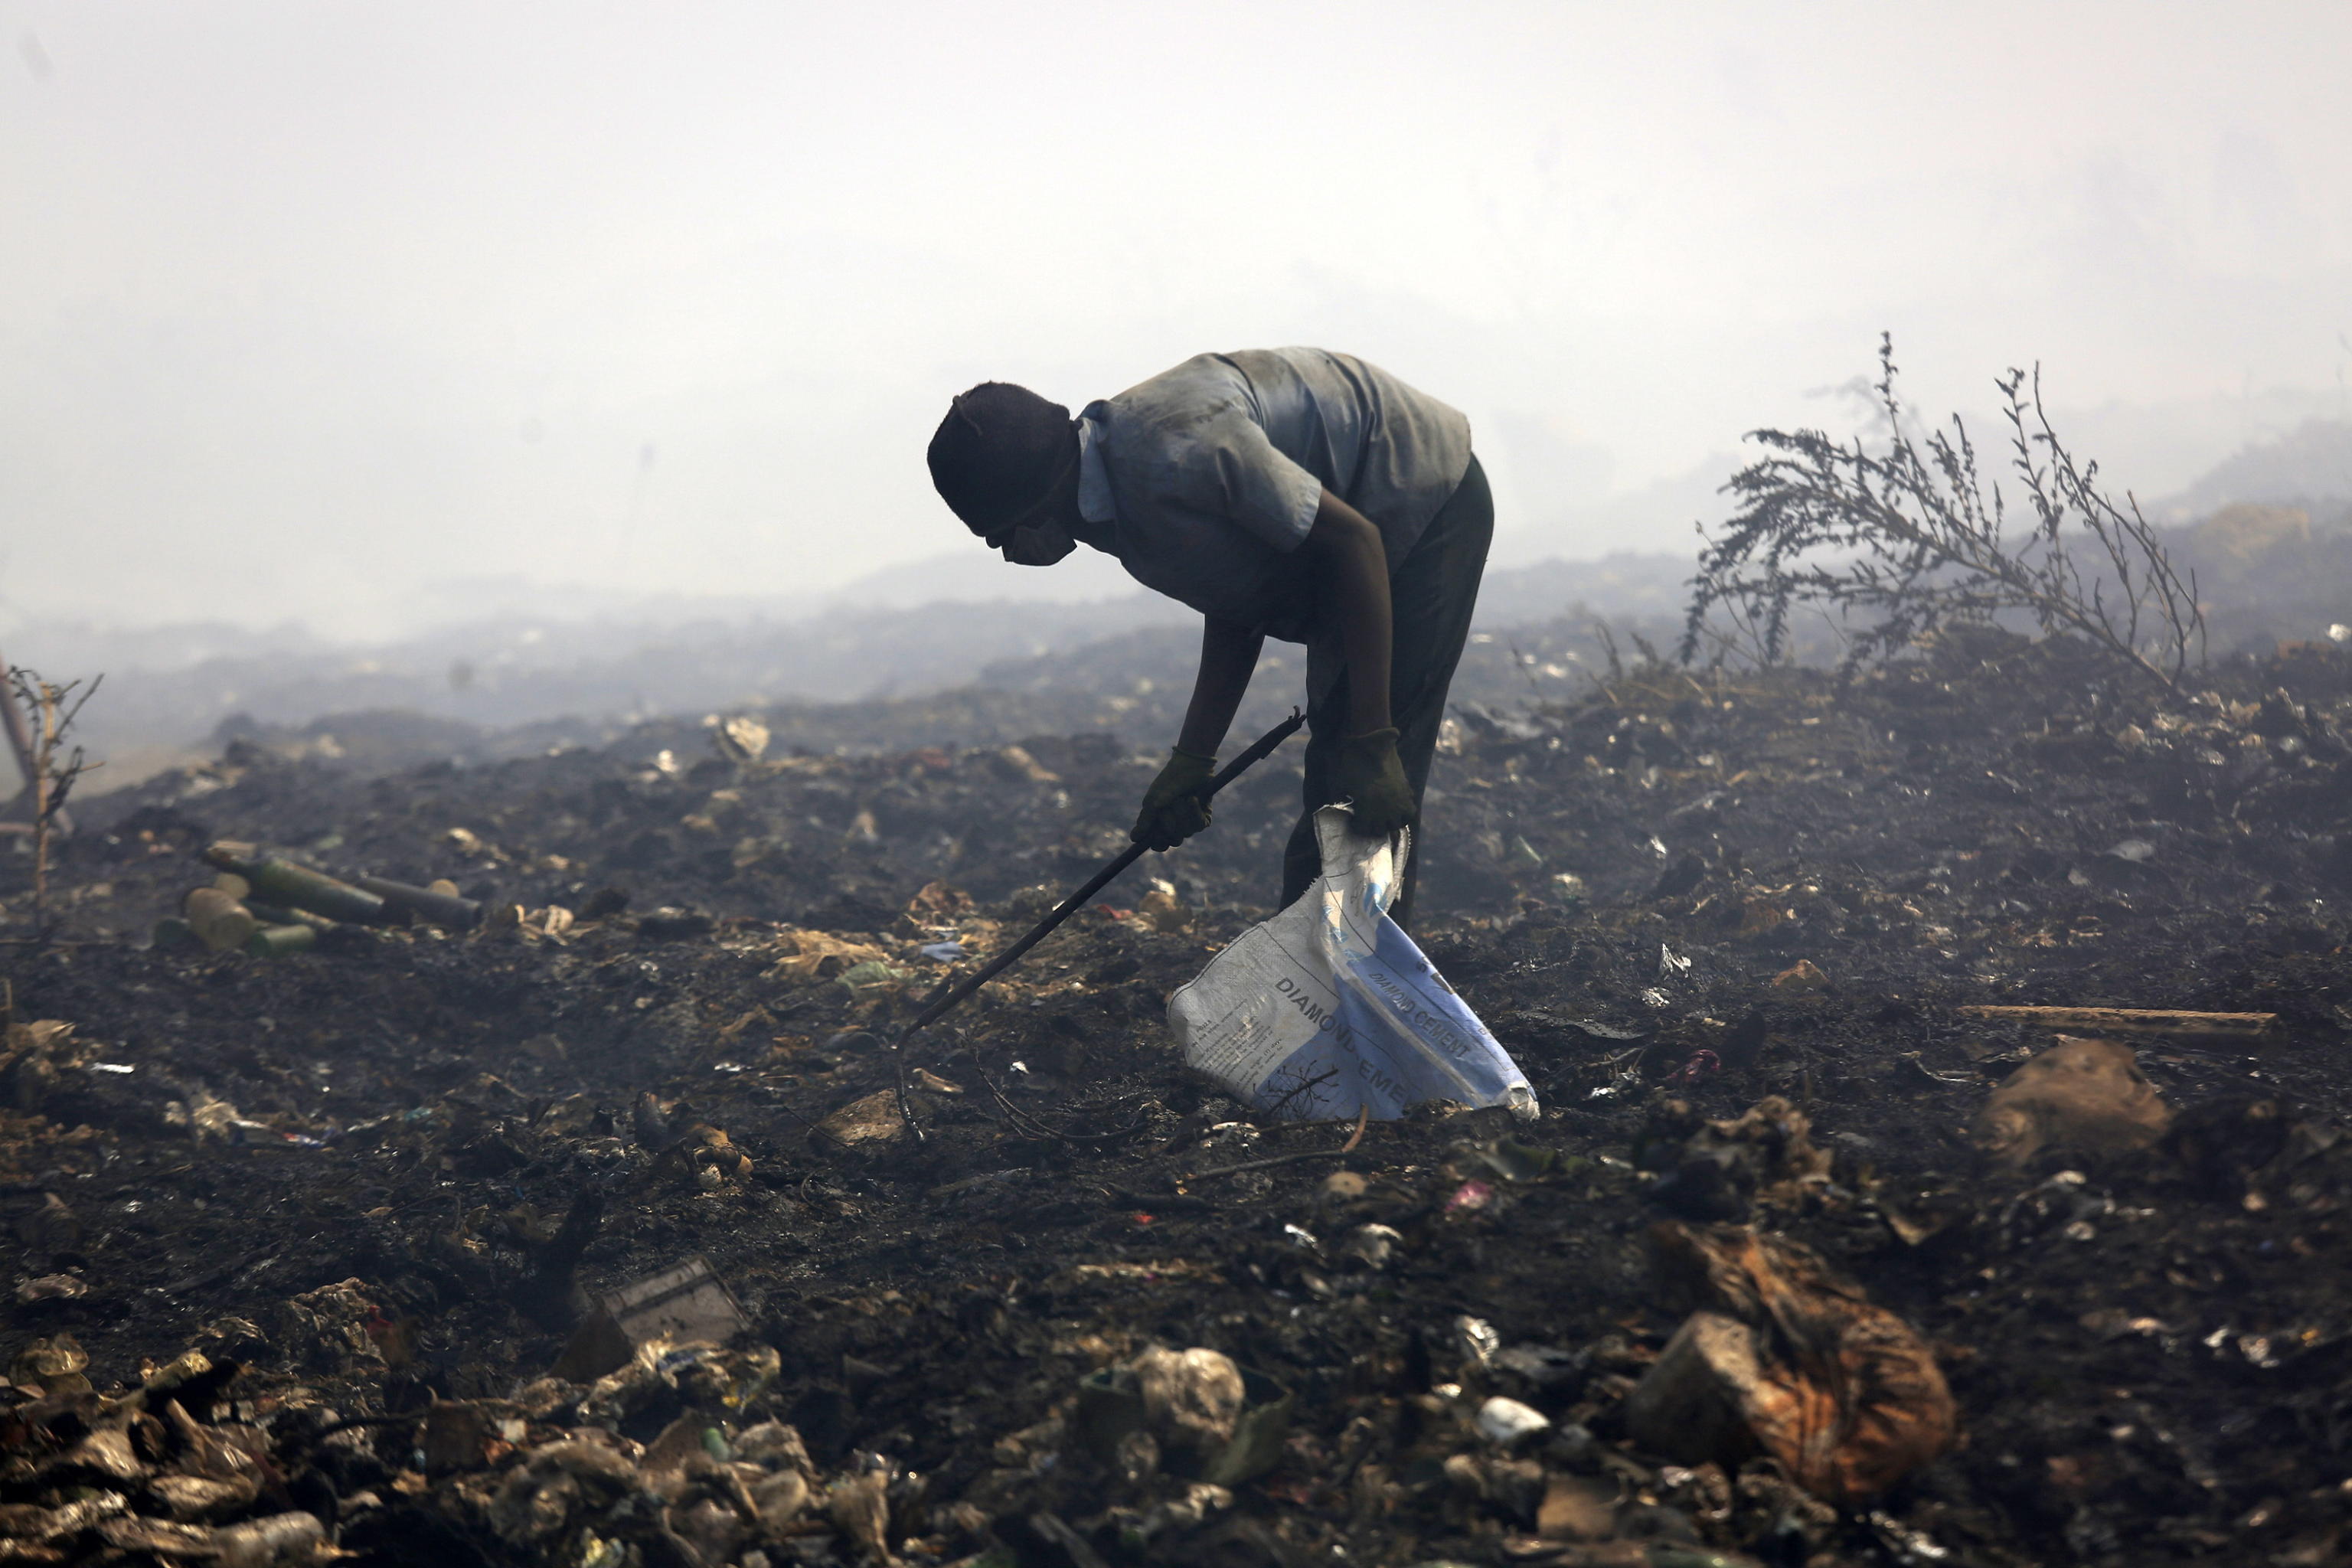 Un uomo cerca qualcosa da vendere in un campo bruciato ad Harare in Zimbabwe